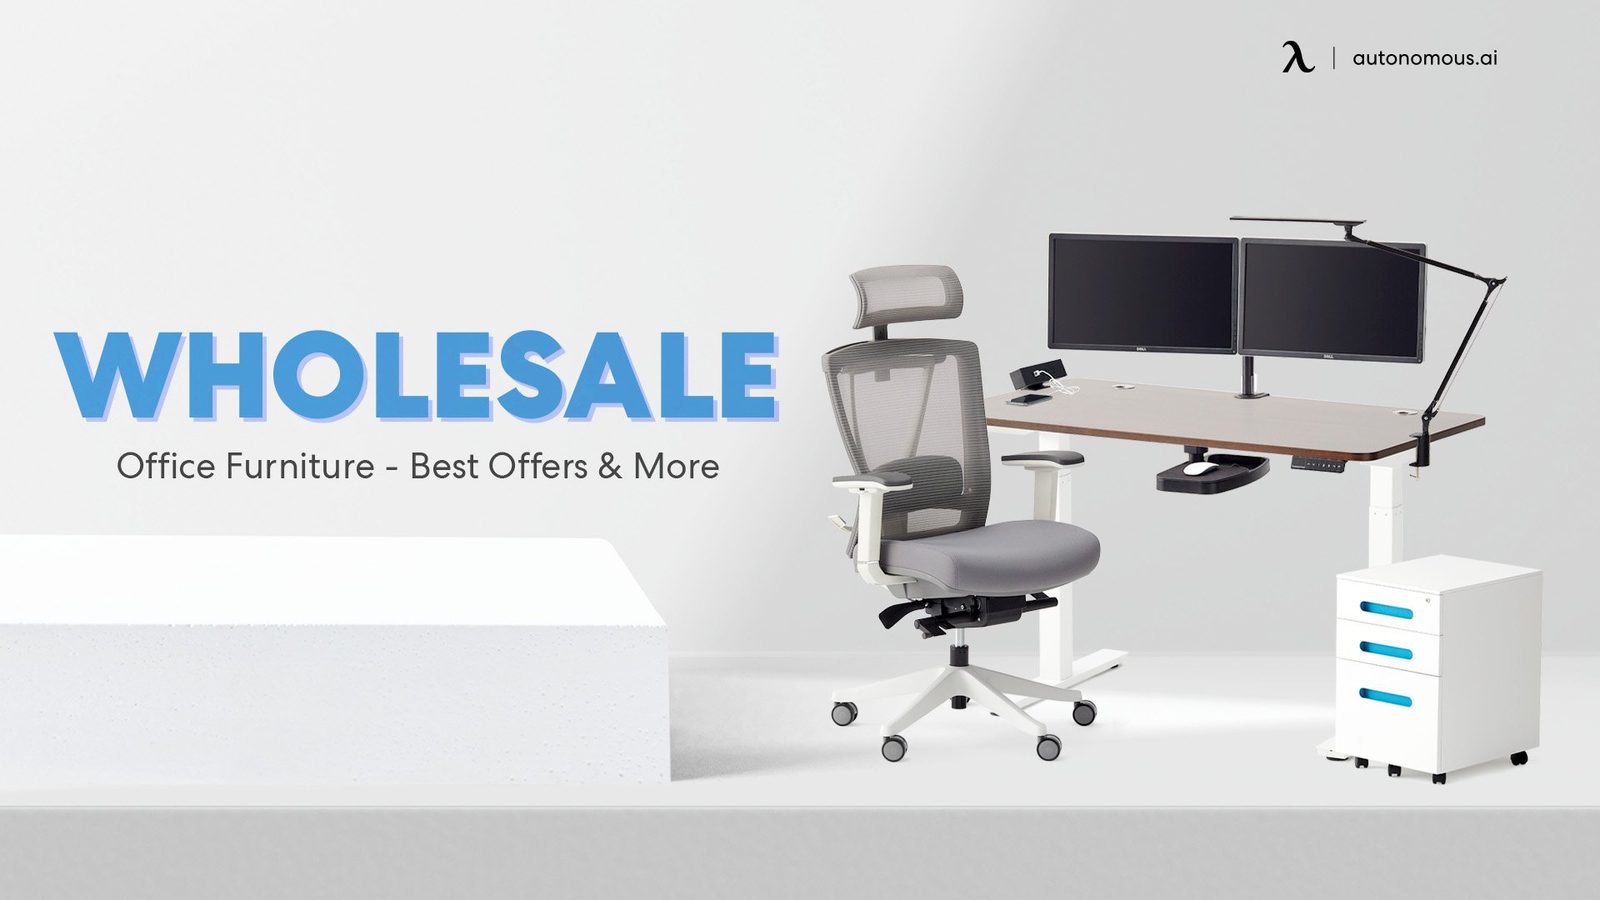 Autonomous Wholesale Office Furniture - Best Offers & More